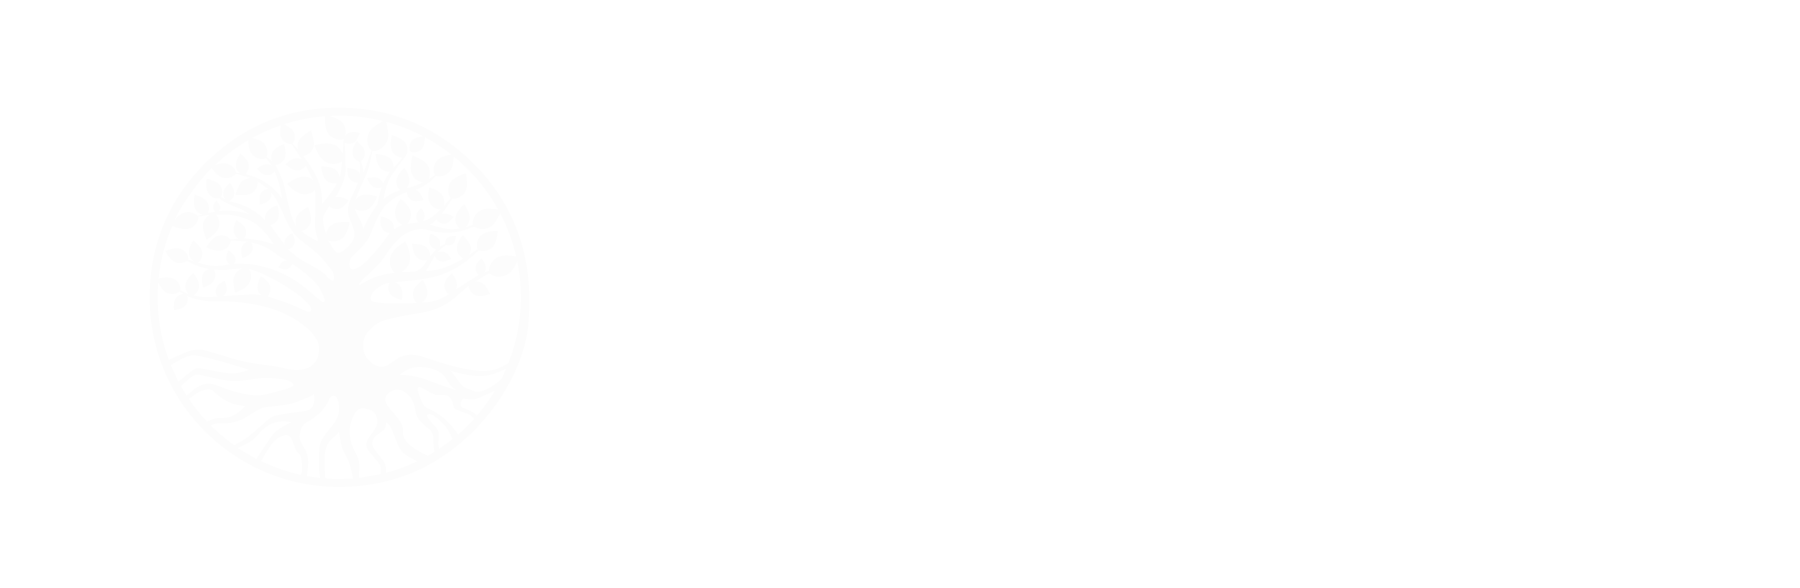 Eagles Landing Christian Counseling Center